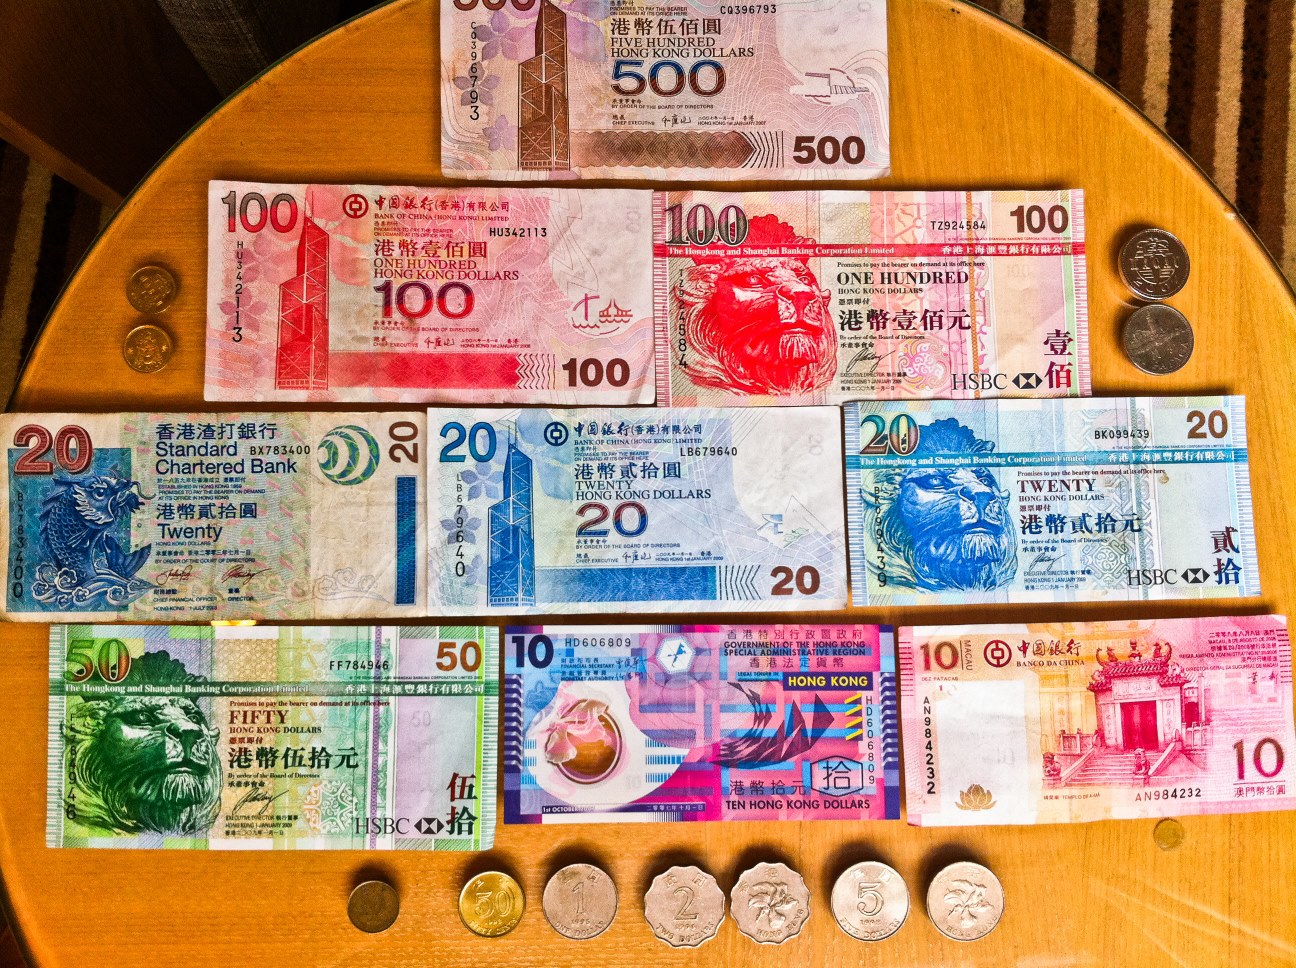 Hkd 899.00 в рублях. Гонконгский доллар. Деньги Гонконга. Гонконгский доллар купюры. Купюры Гонконга.